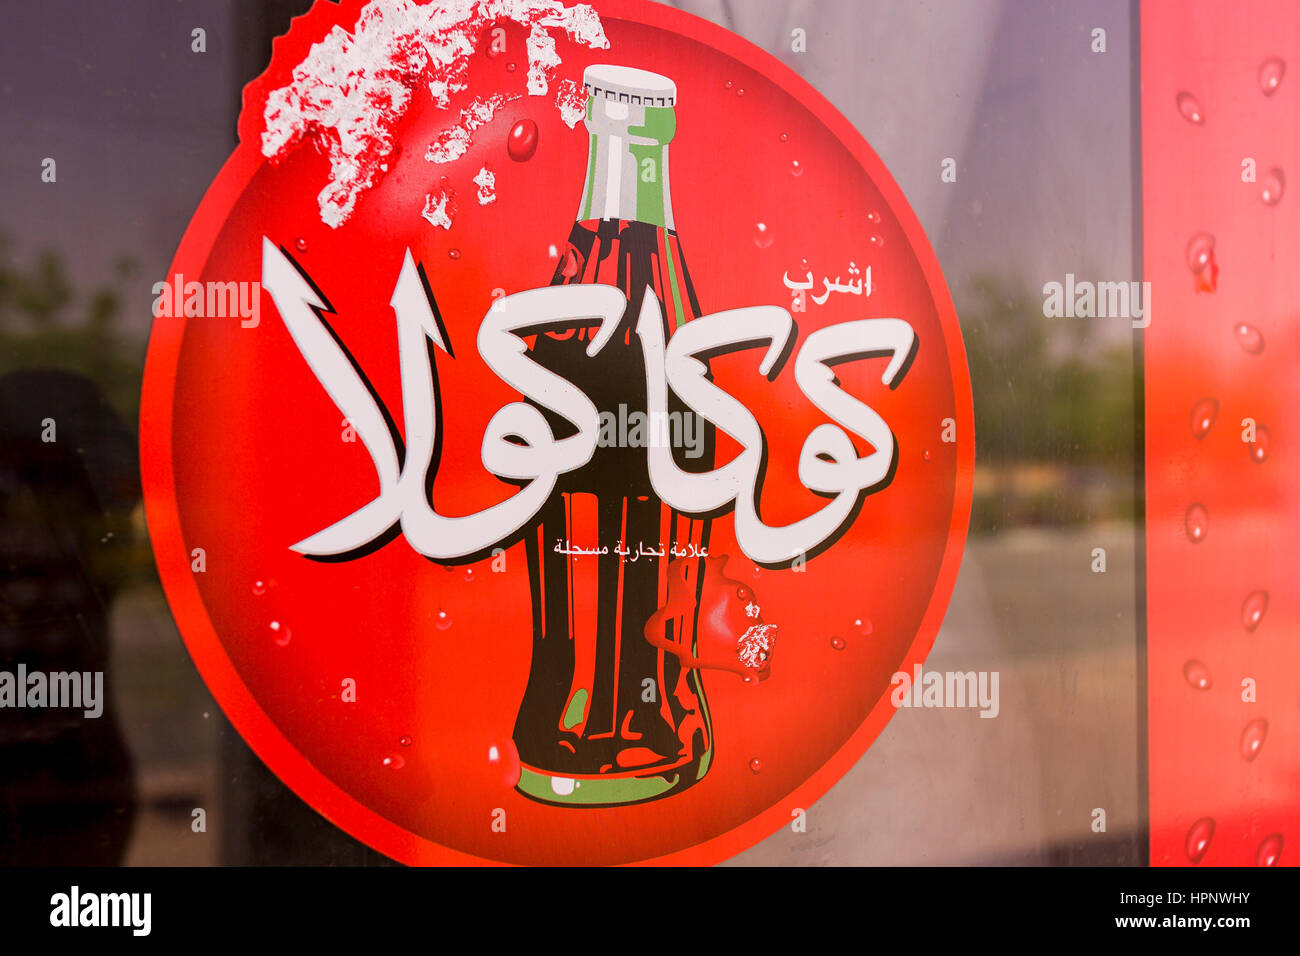 AL AIN, EMIRATI ARABI UNITI - Rosso Coca-cola sign in arabo, mostrando una bottiglia di coca cola. Foto Stock